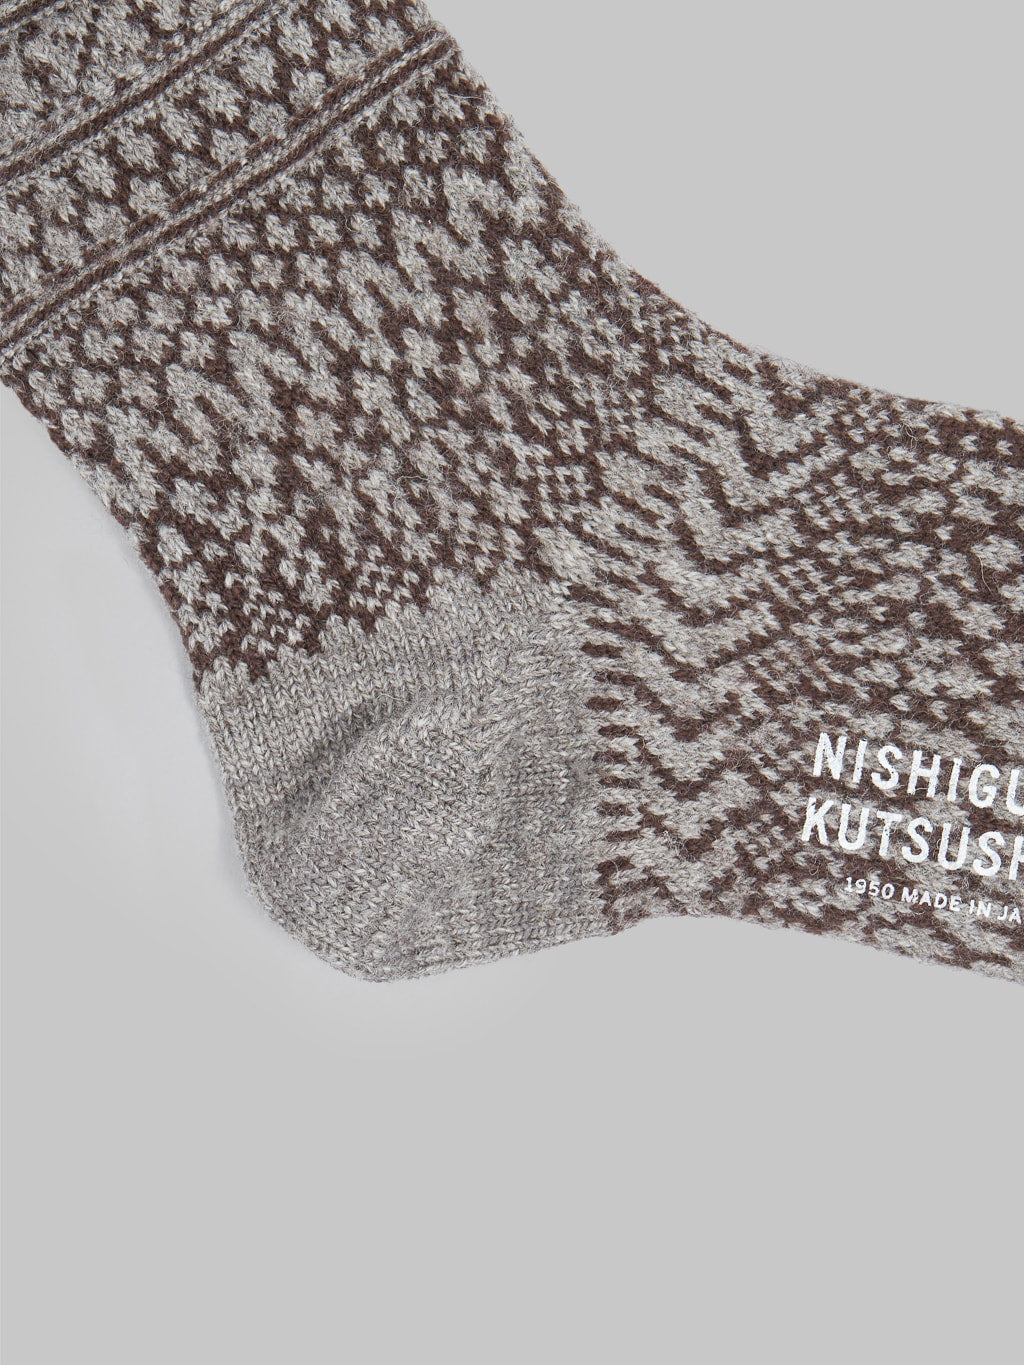 Nishiguchi Kutsushita Wool Jacquard Socks Grey Heel